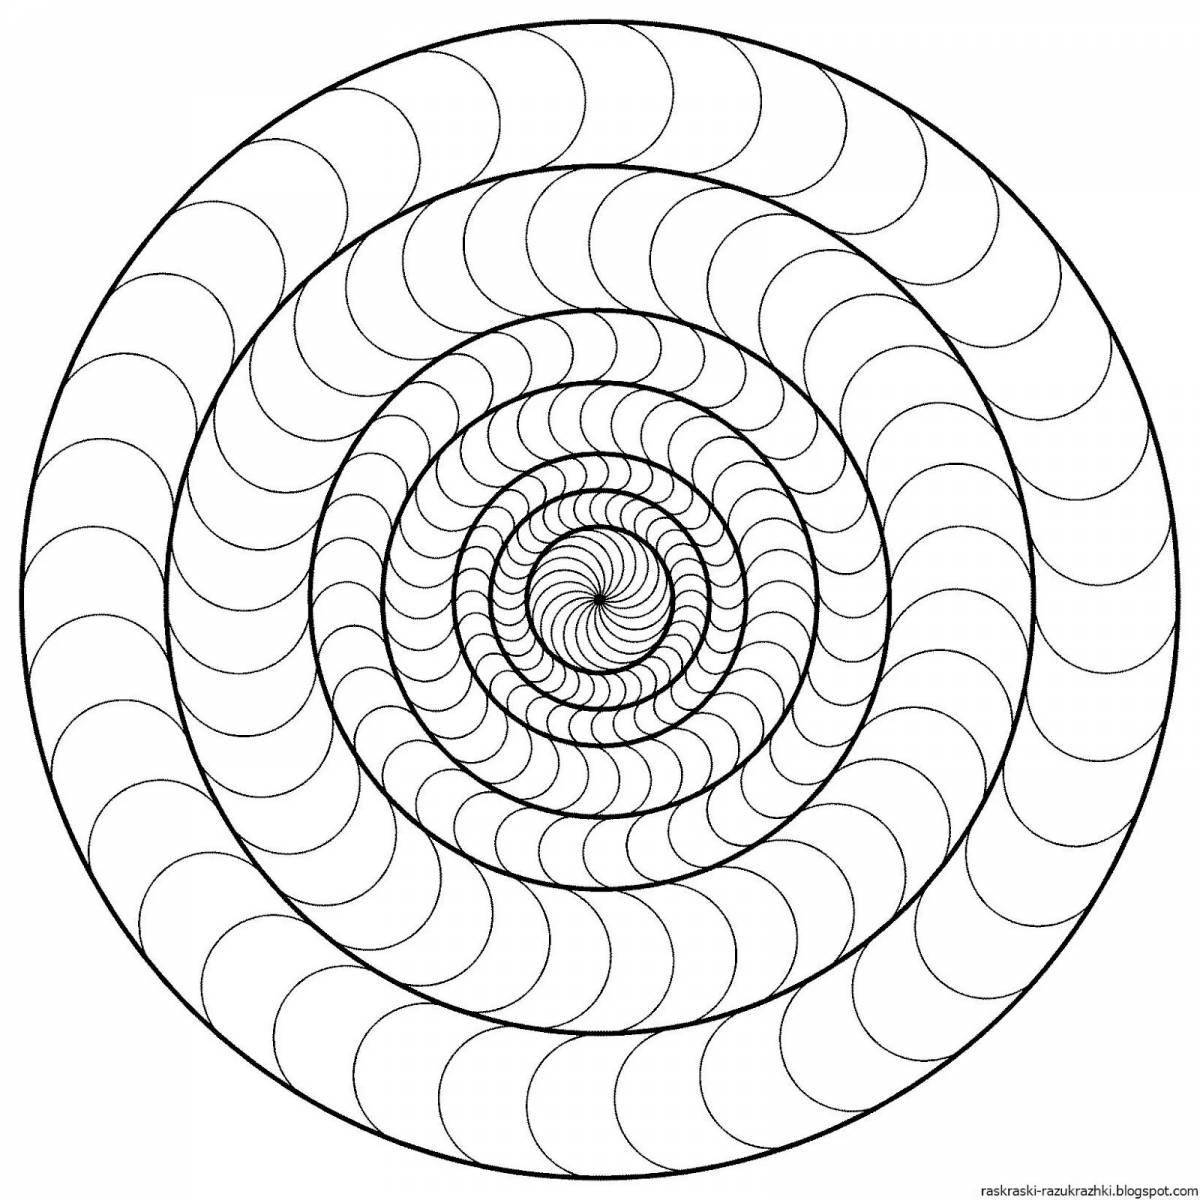 Thin spiral portrait